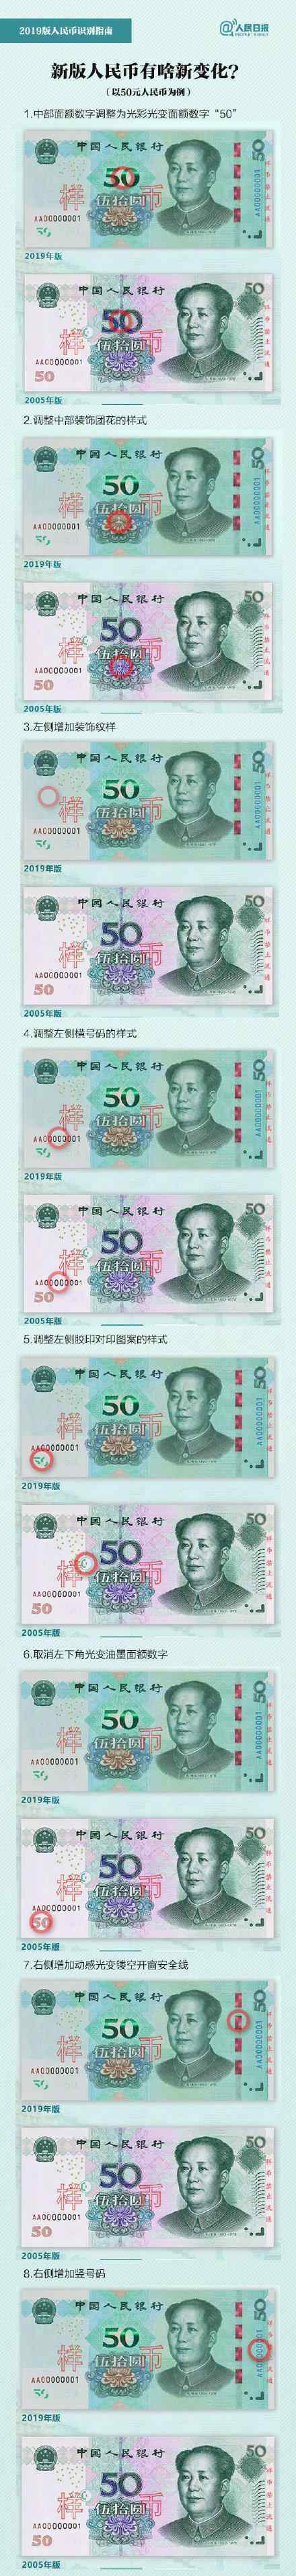 新版人民币自带美颜滤镜 新旧人民币区别是什么